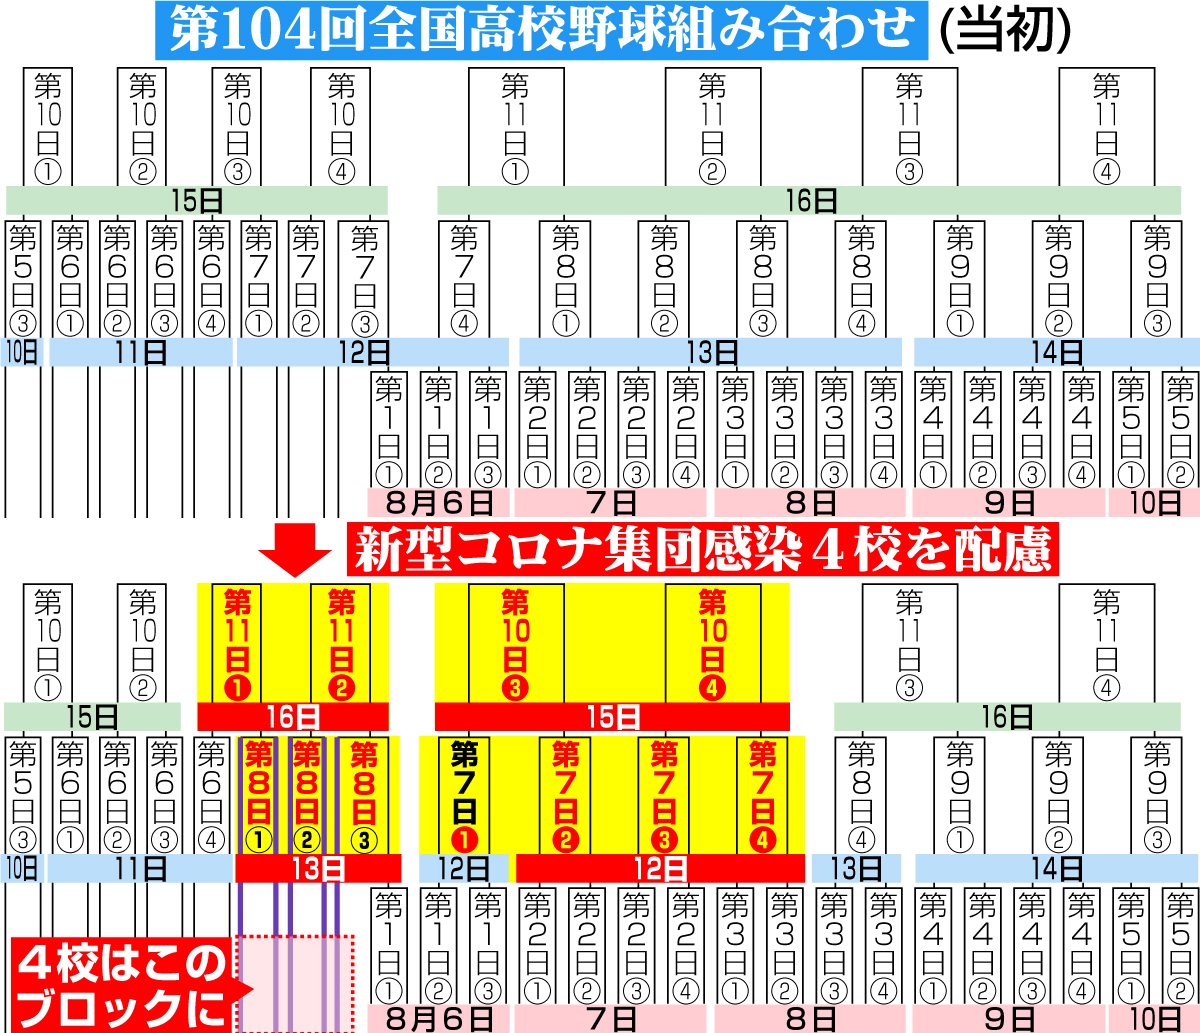 【イラスト】夏の甲子園組み合わせ日程変更